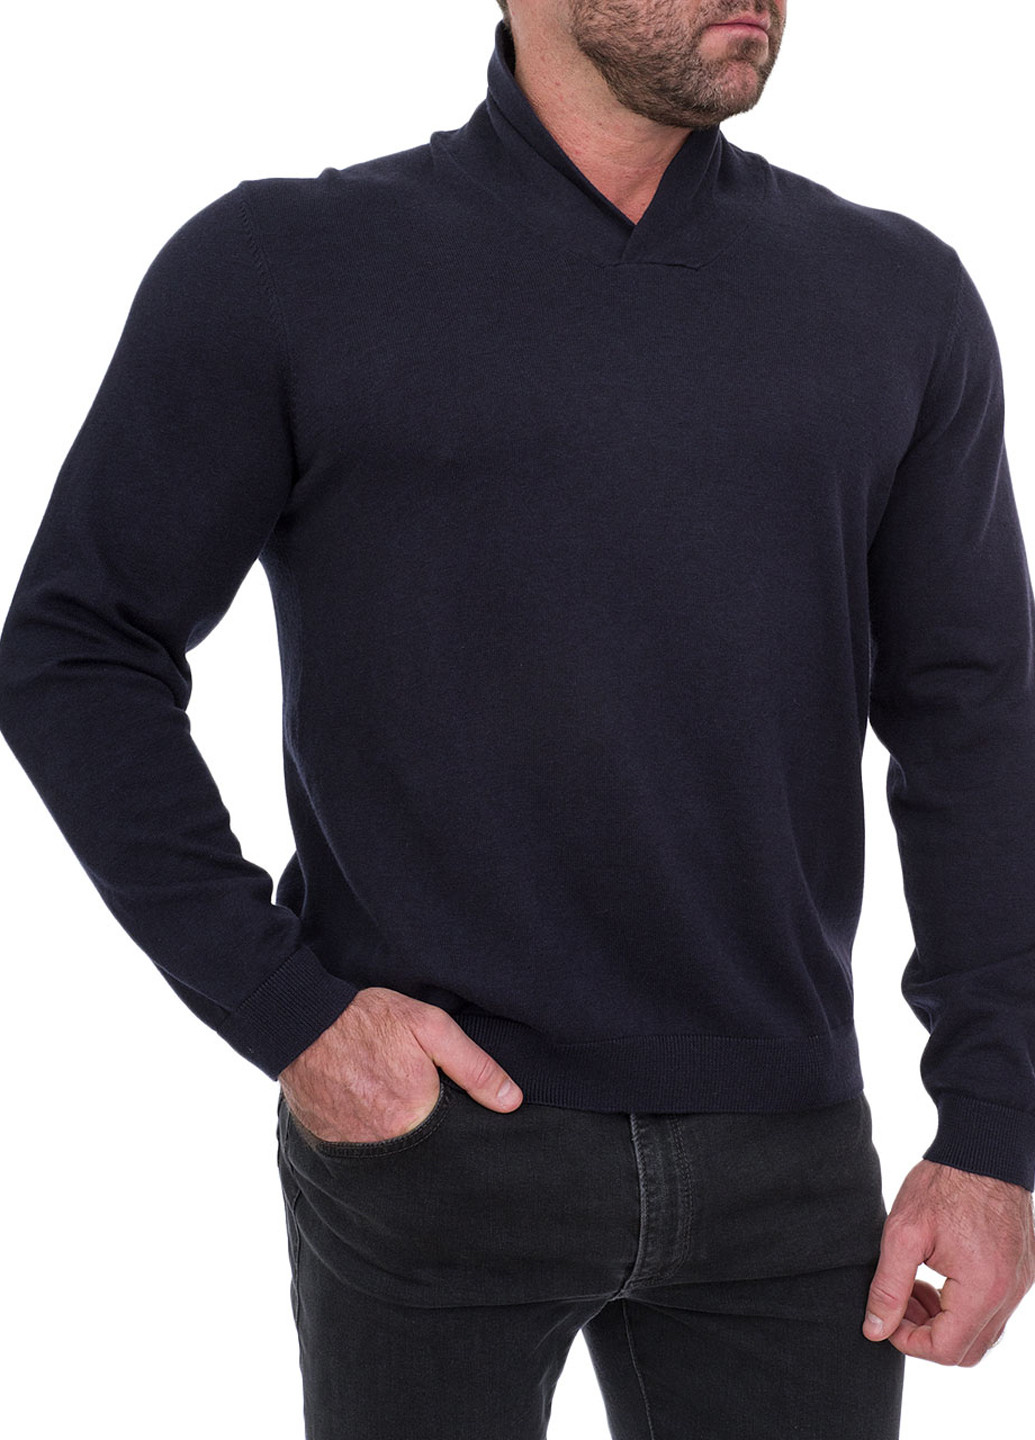 Темно-синий демисезонный пуловер пуловер Mc Neal